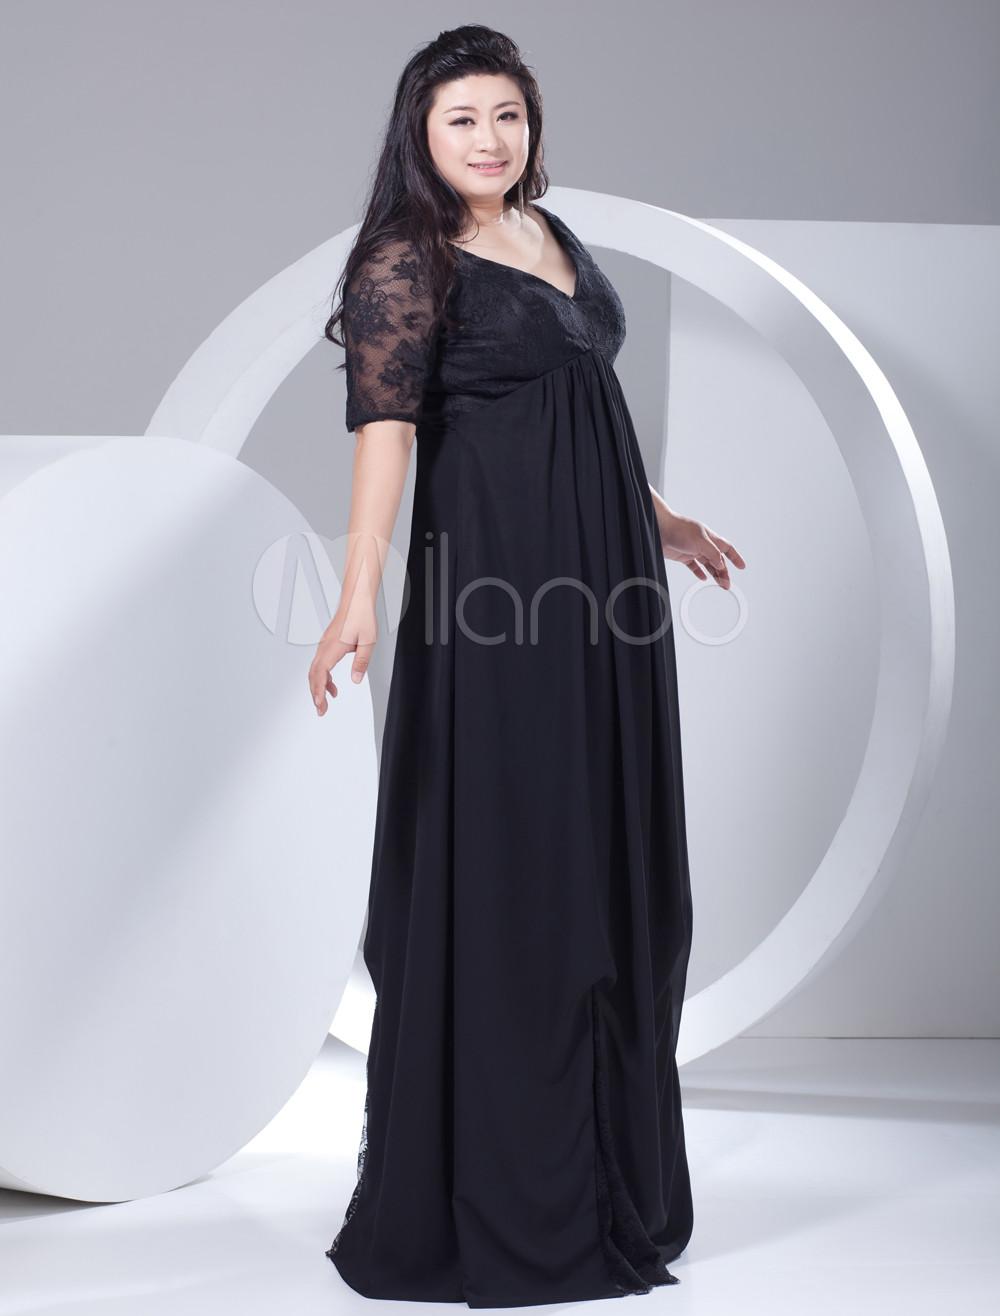 Foto 2013 Estilo elegante gasa negra del cordón media manga más vestido de noche de tamaño